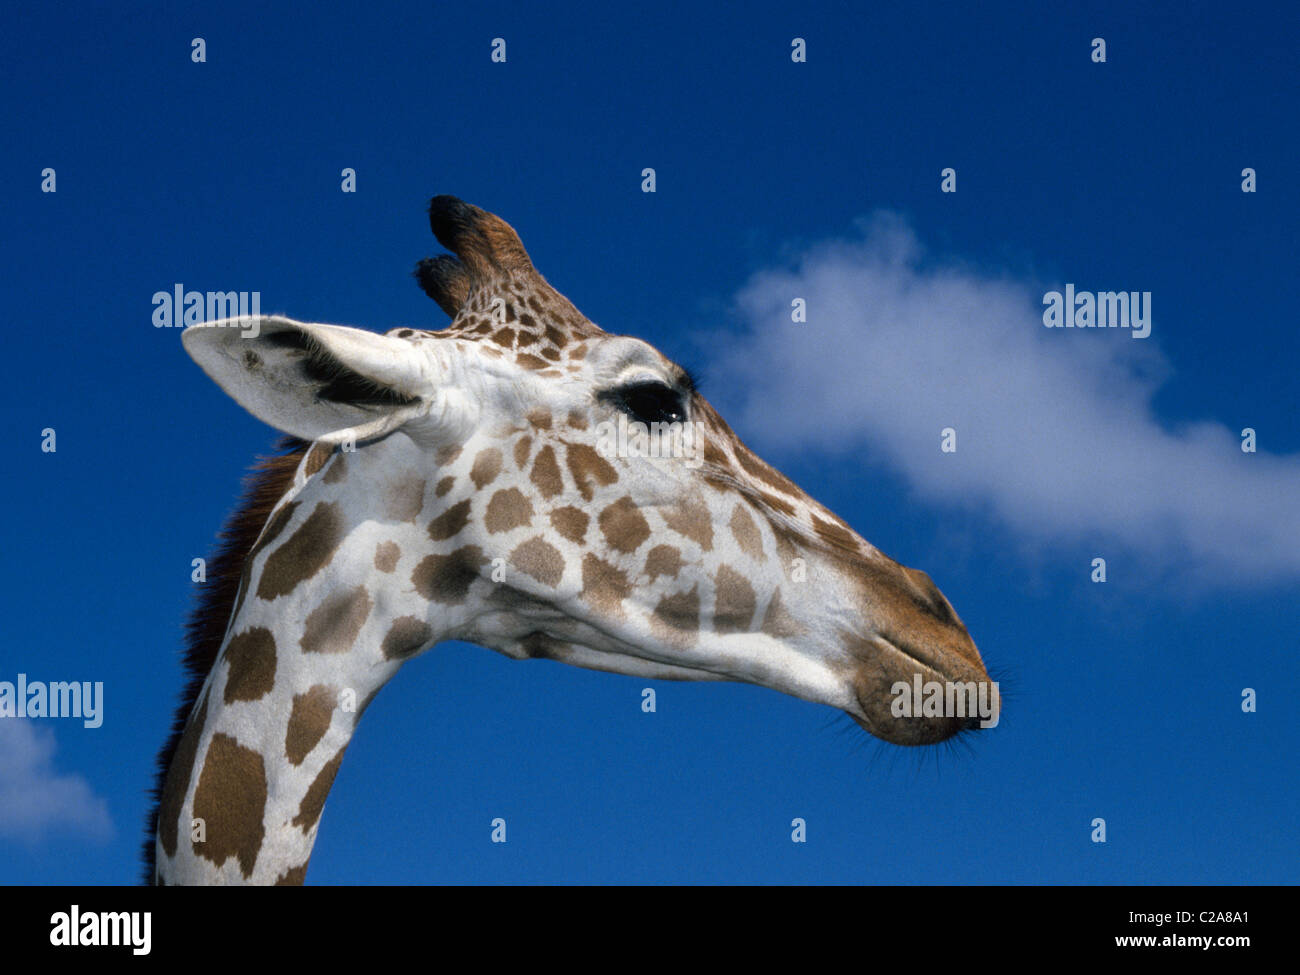 Eine afrikanische netzförmigen Giraffe streckt seinen langen Hals zu starren auf Besucher zu Busch Gardens, ein Tier & Abenteuer Themenpark in Tampa, Florida, USA. Stockfoto